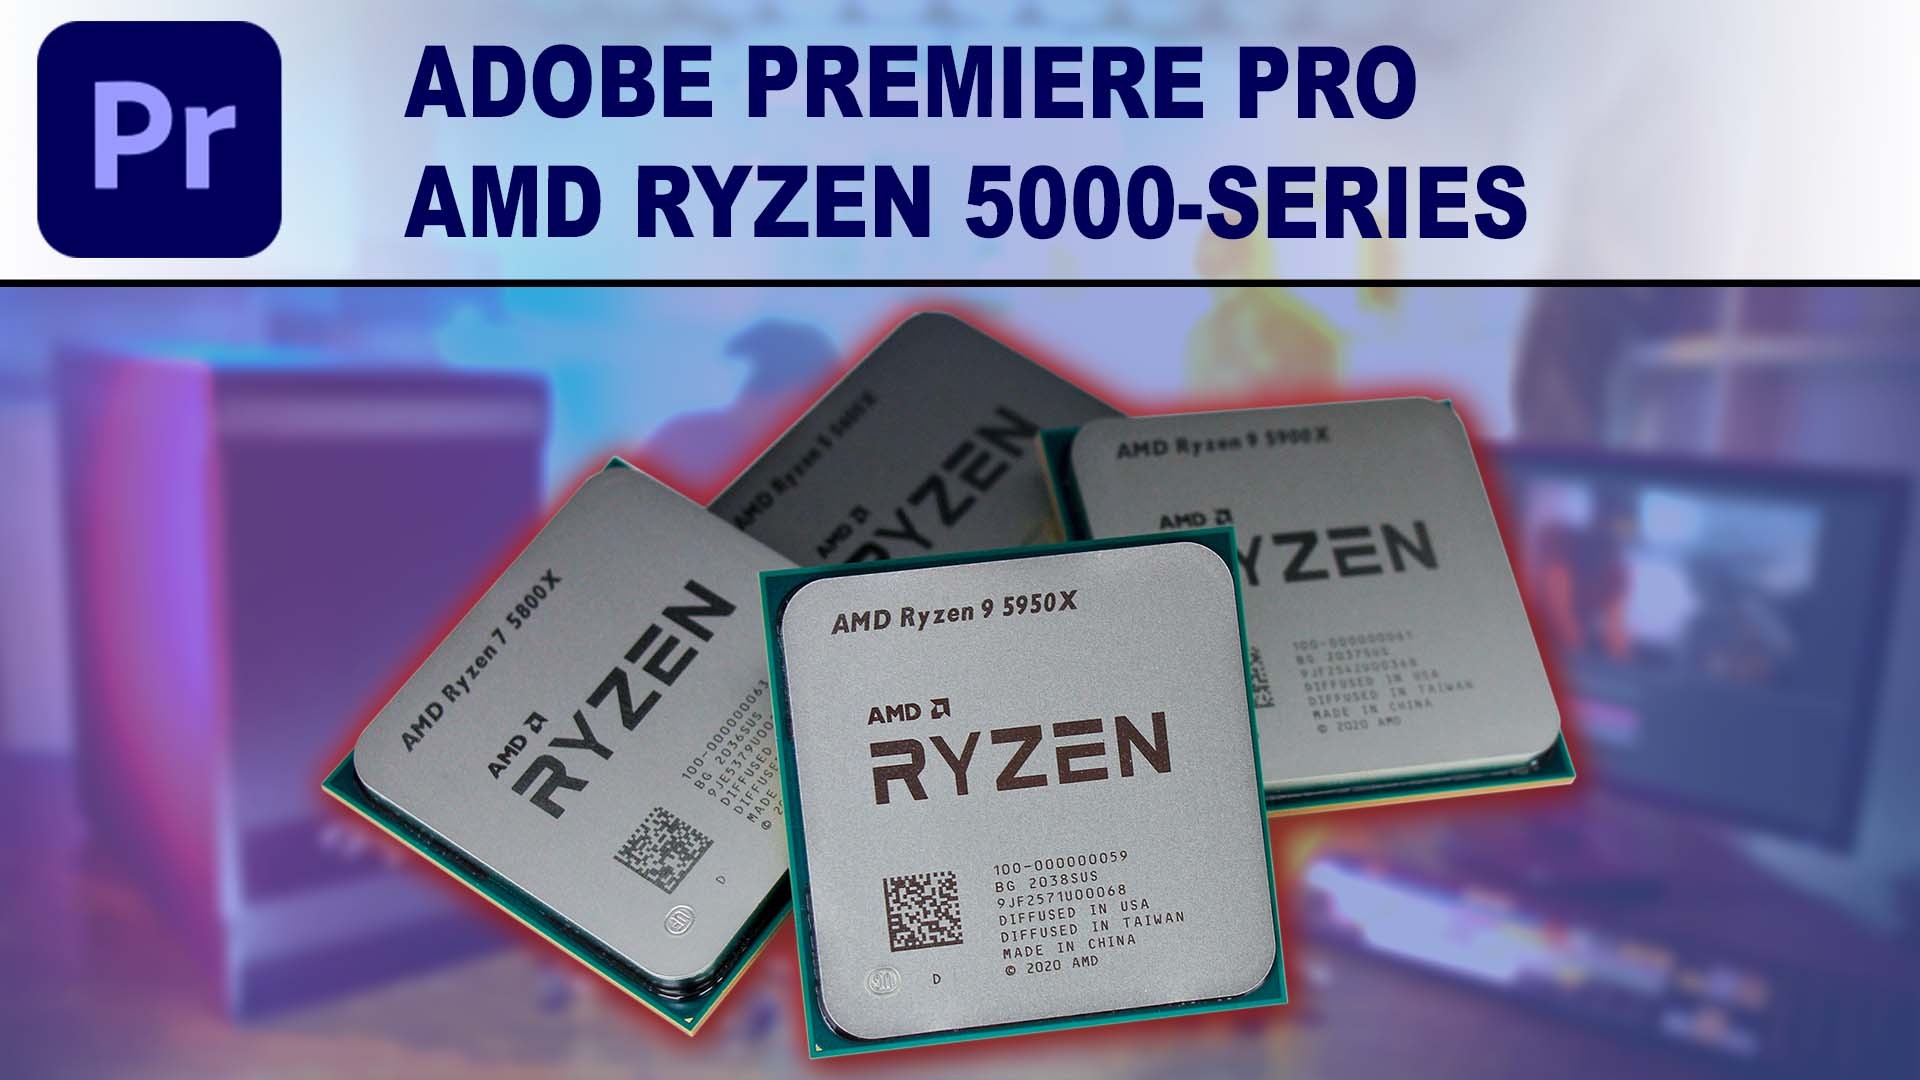 AMD Ryzen 5000-series for Adobe Premiere Pro